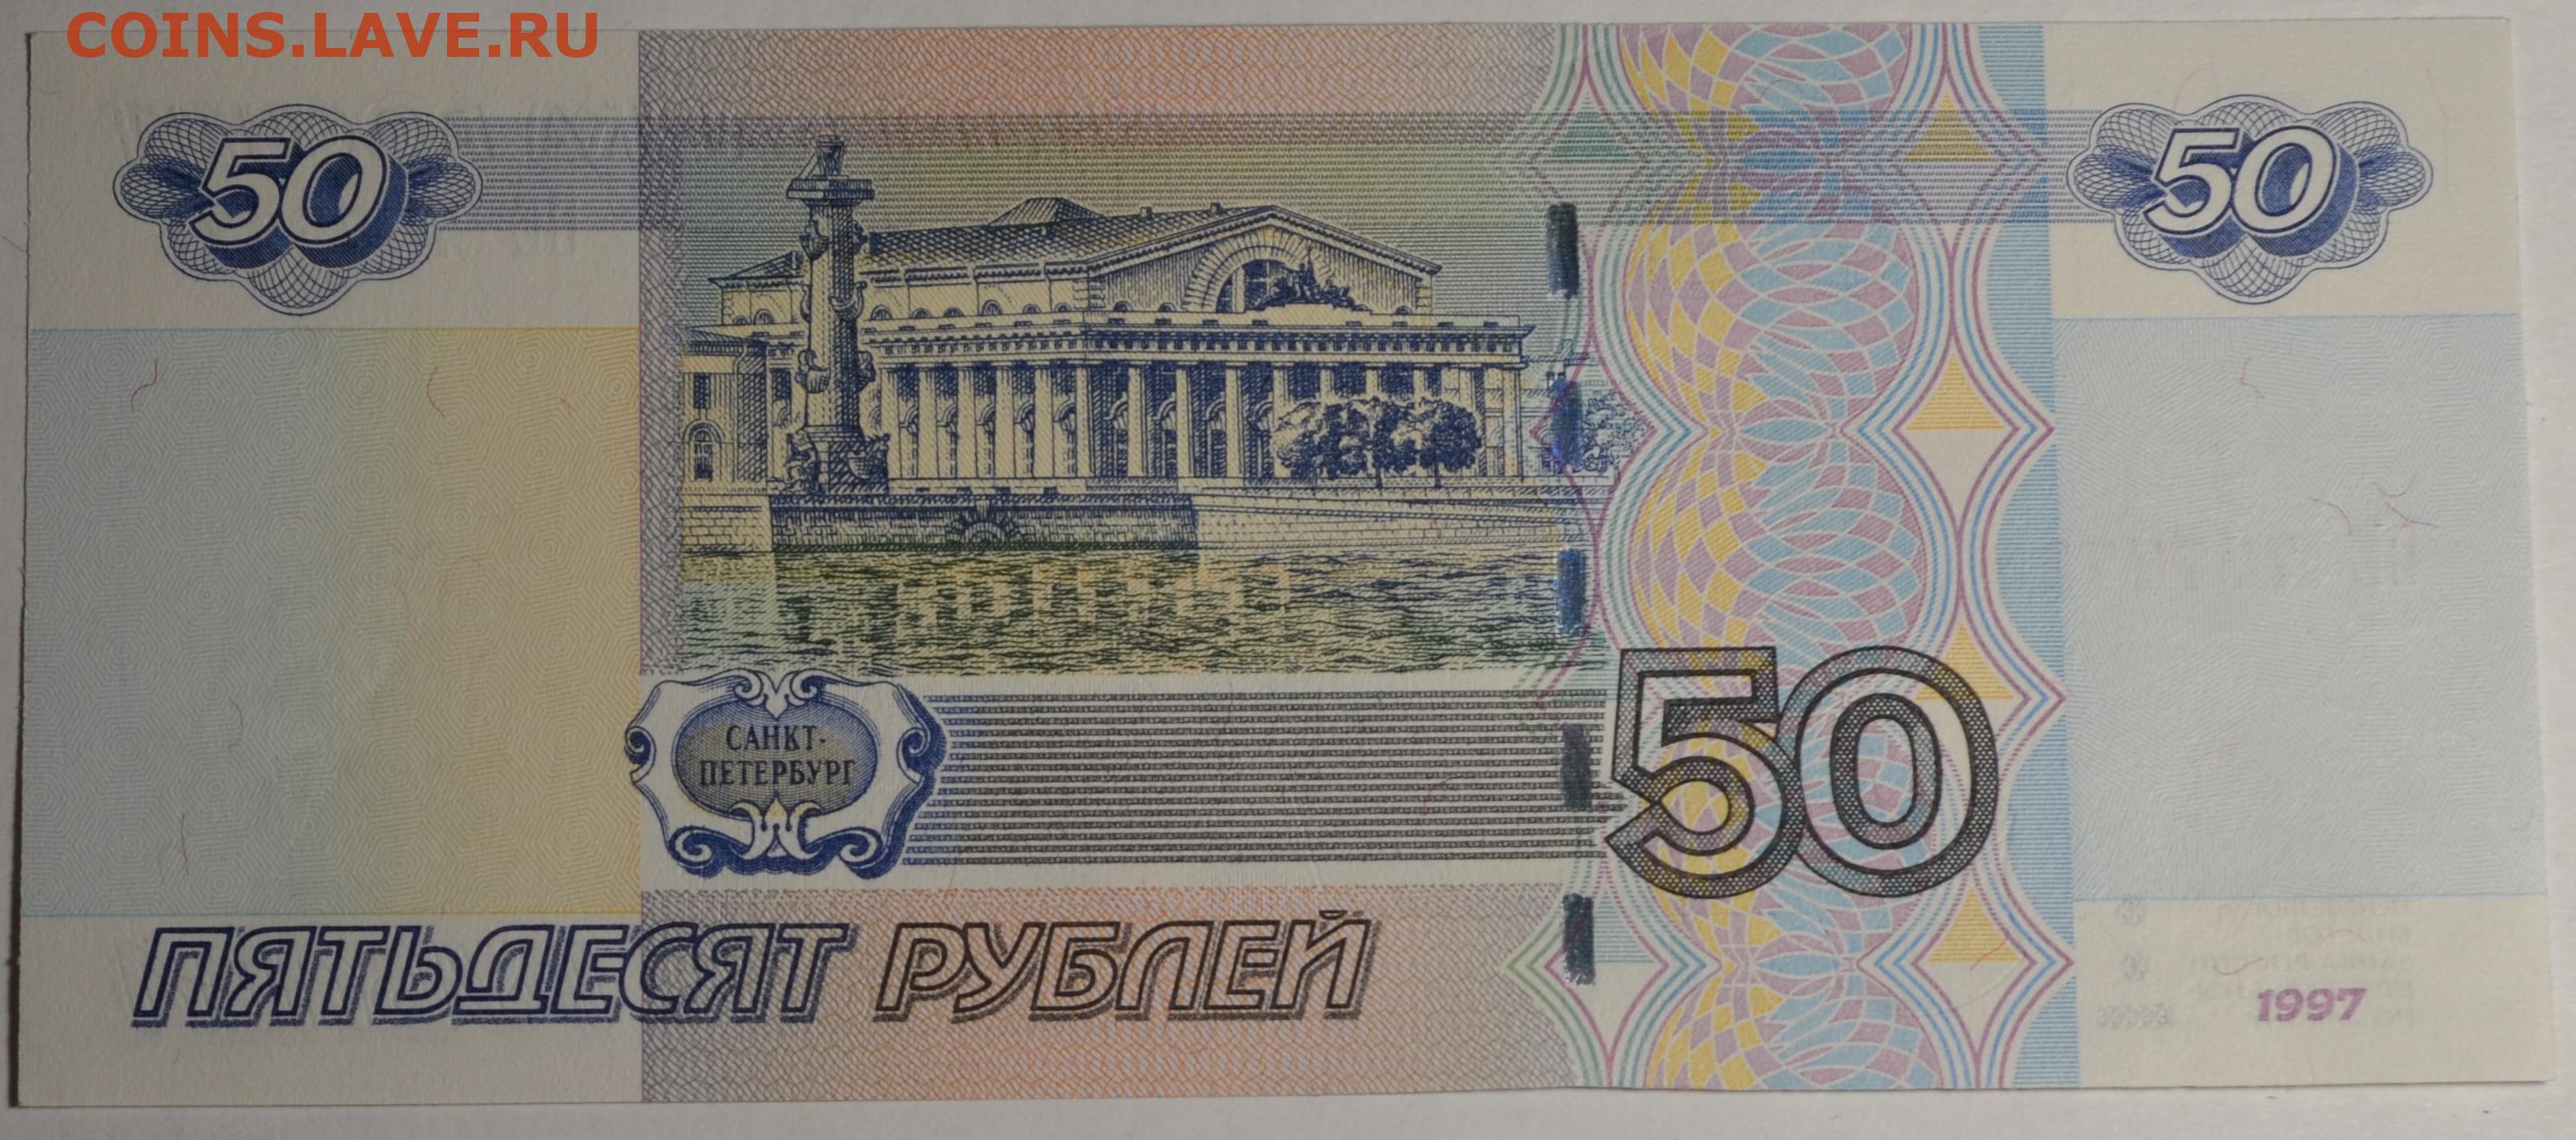 Лицевая сторона денег. Банкнота 50 рублей. Деньги 50 рублей. 50 Рублевая купюра. Бумажные деньги 50 рублей.